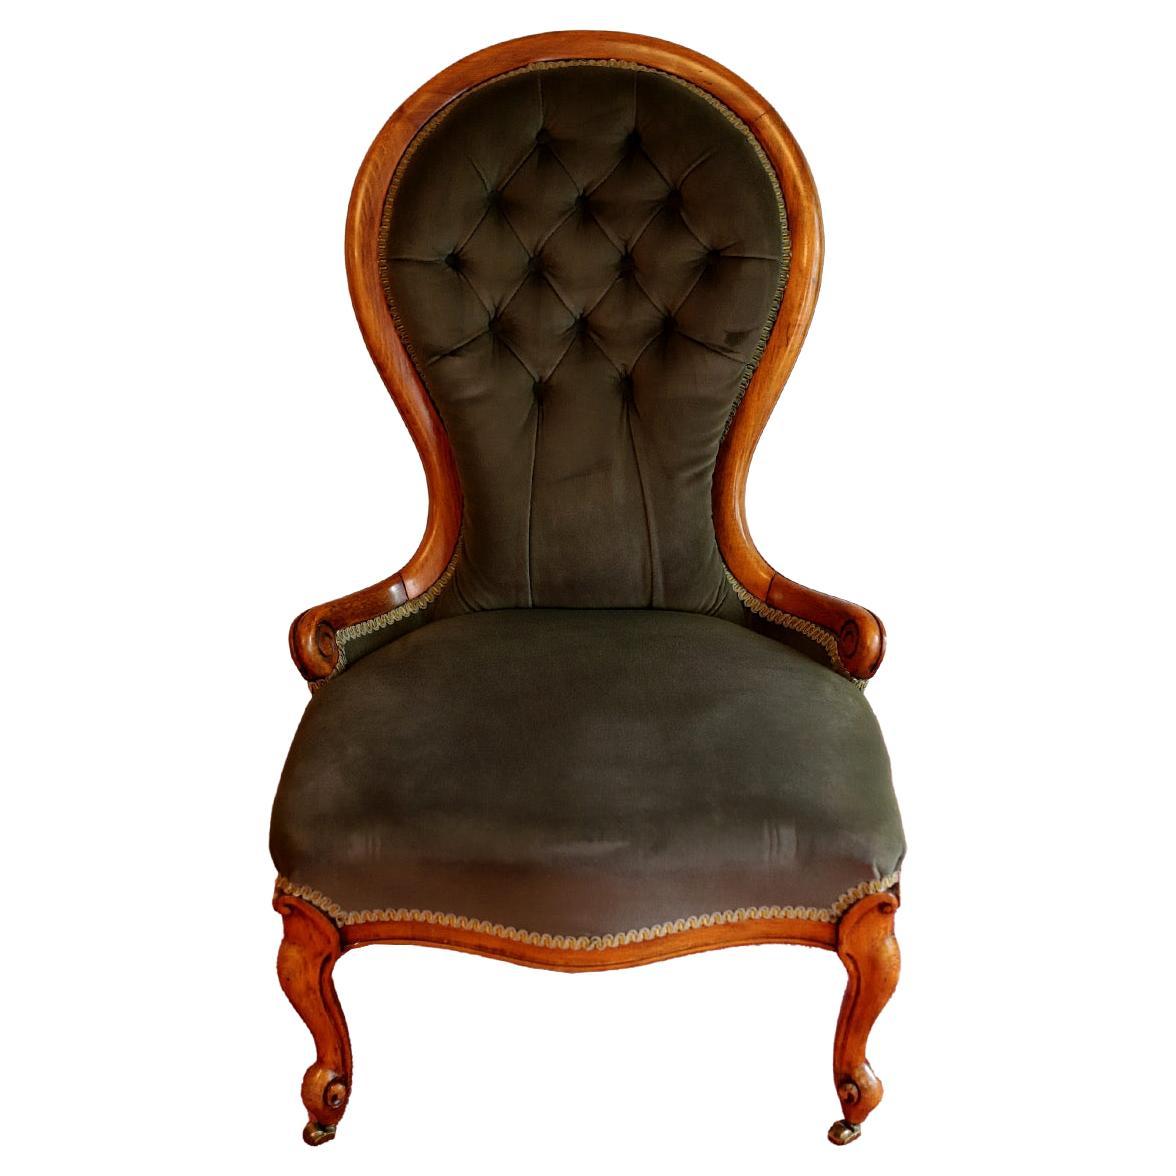 Schöne antike viktorianische Mahagoni Damen Stuhl rühmt sich einer schönen geformten Rücken, Serpentine vorderen Schiene, stehend auf geformten Cabriole Beine auf der Vorderseite aus gefegt zurück Beine in Original-Polsterung, um 1870
Zögern Sie